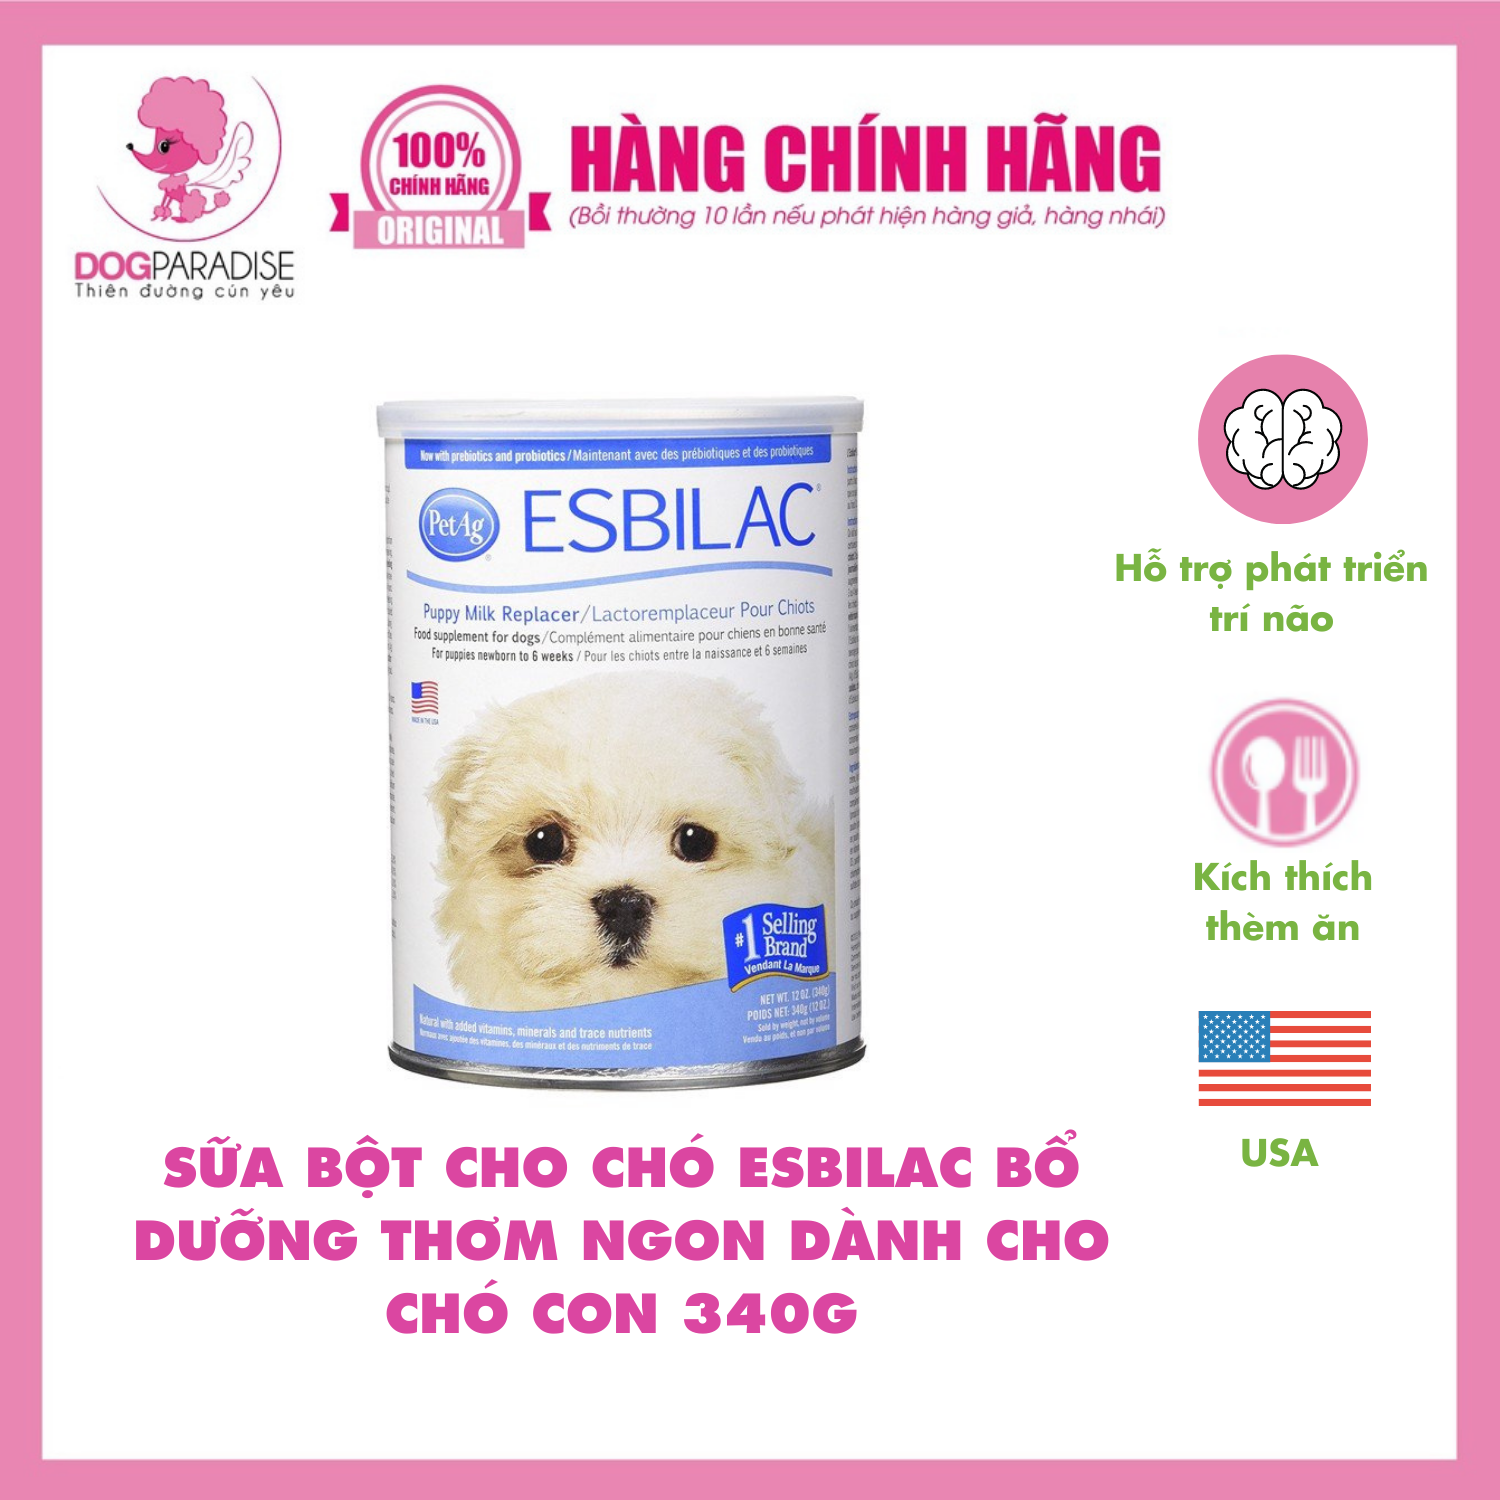 Sữa bột cho chó Esbilac bổ dưỡng thơm ngon dành cho chó con 340g